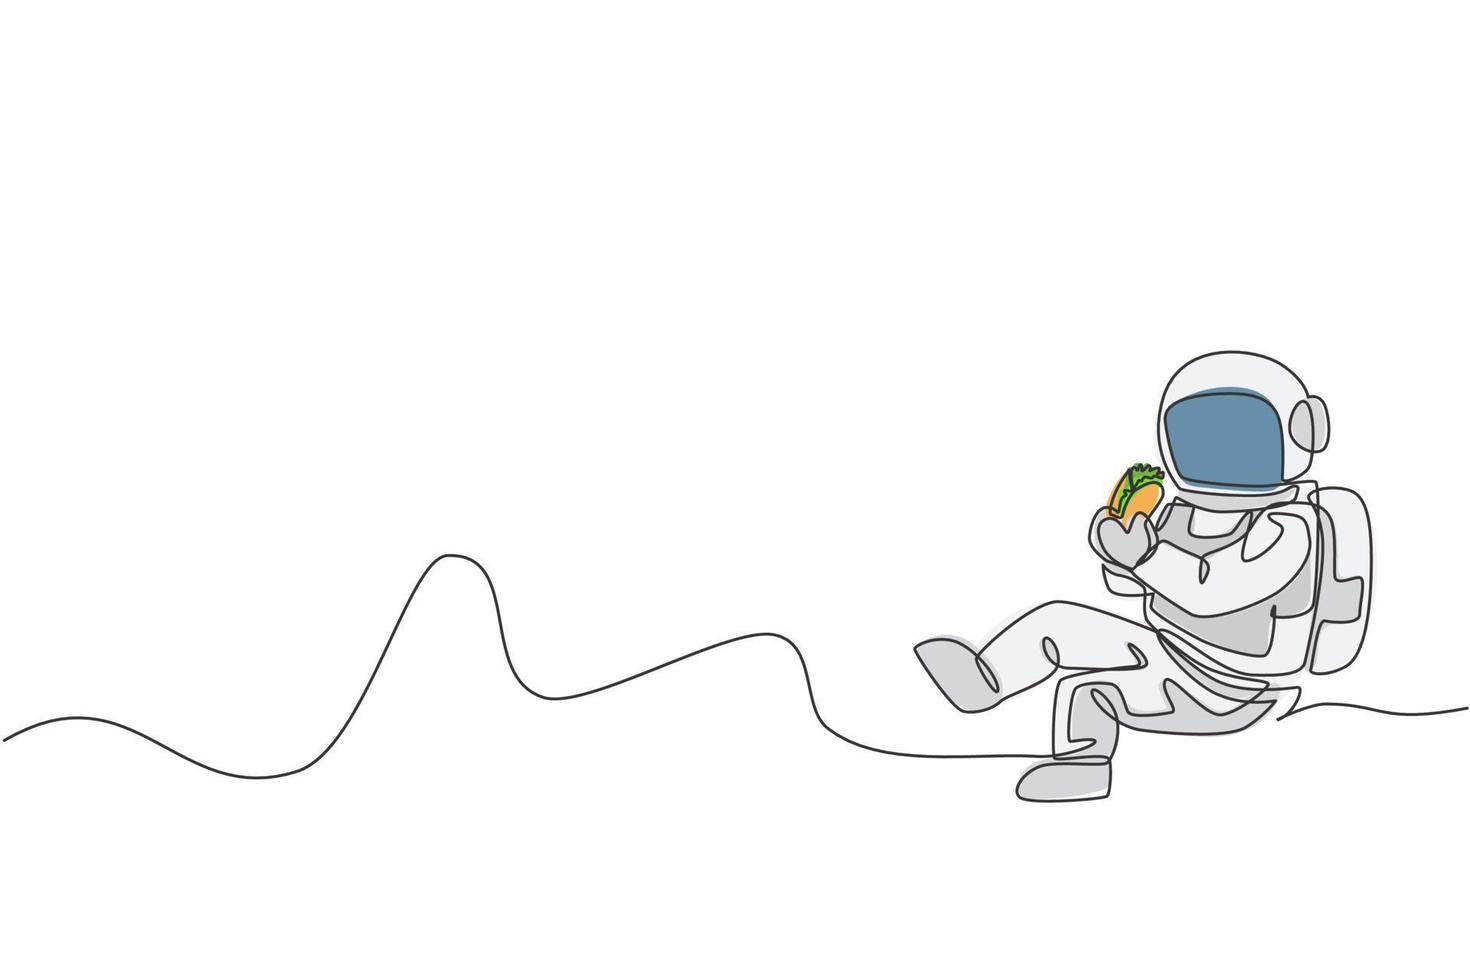 desenho de linha única contínua de astronauta sentado relaxando na superfície da lua e comendo um delicioso taco mexicano. ficção de fantasia do conceito de vida do espaço sideral. ilustração em vetor desenho desenho de uma linha na moda